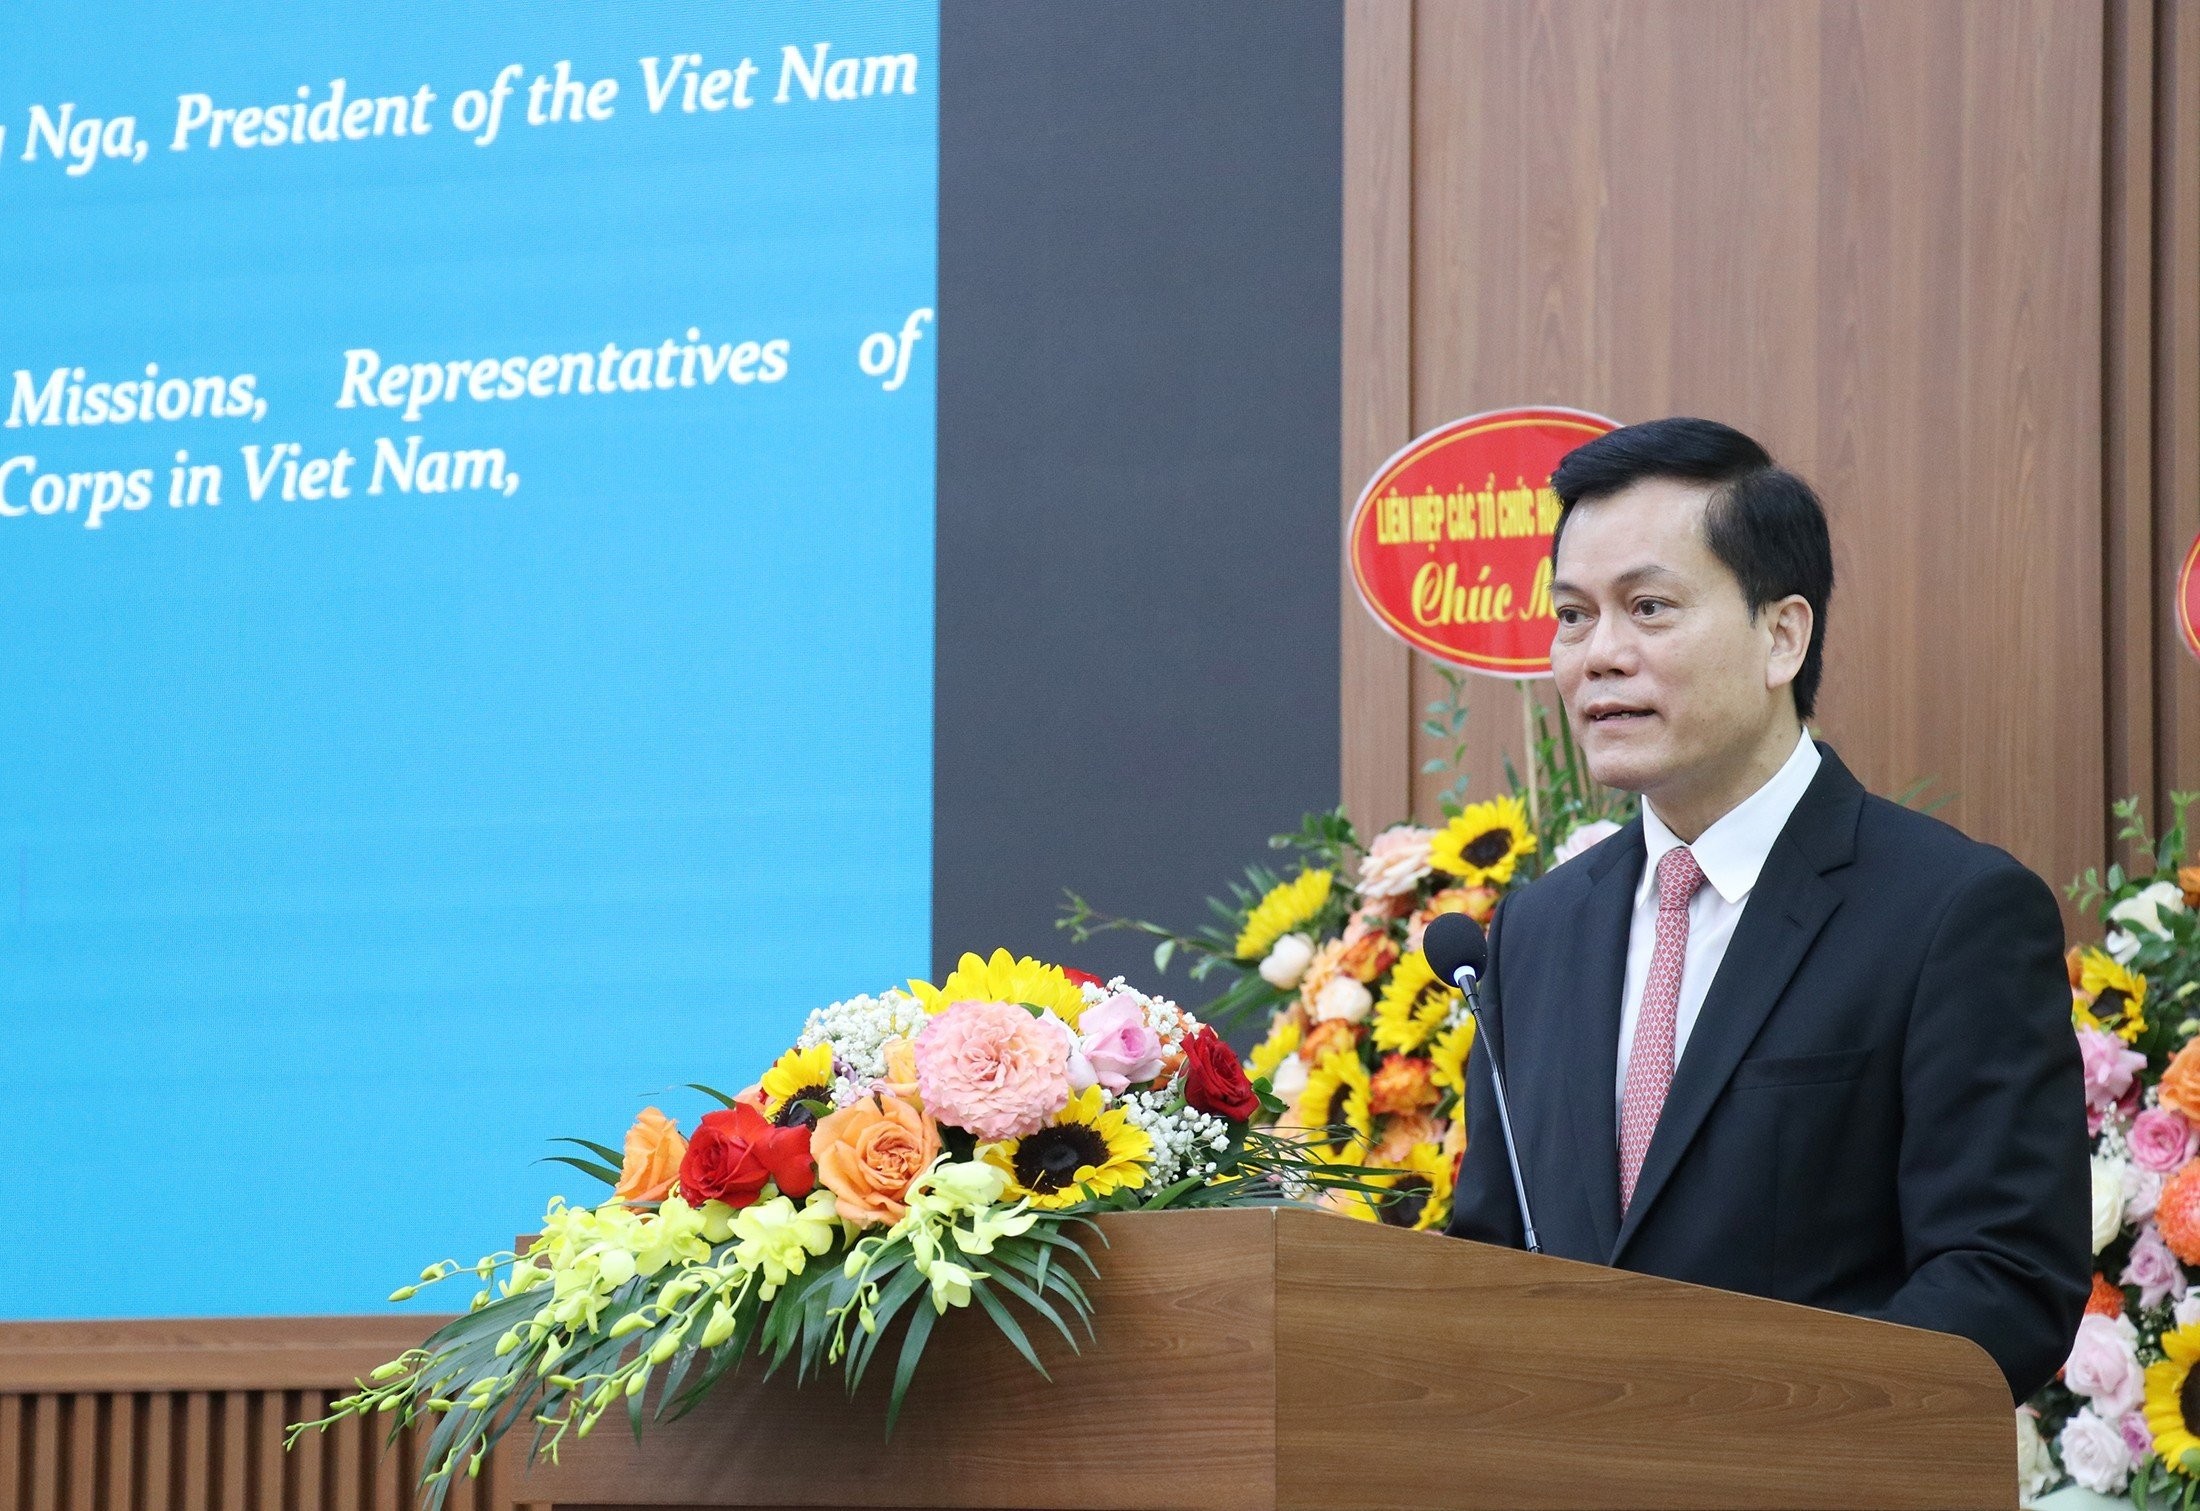 Quan hệ Việt Nam - Iran còn nhiều dư địa để phát triển